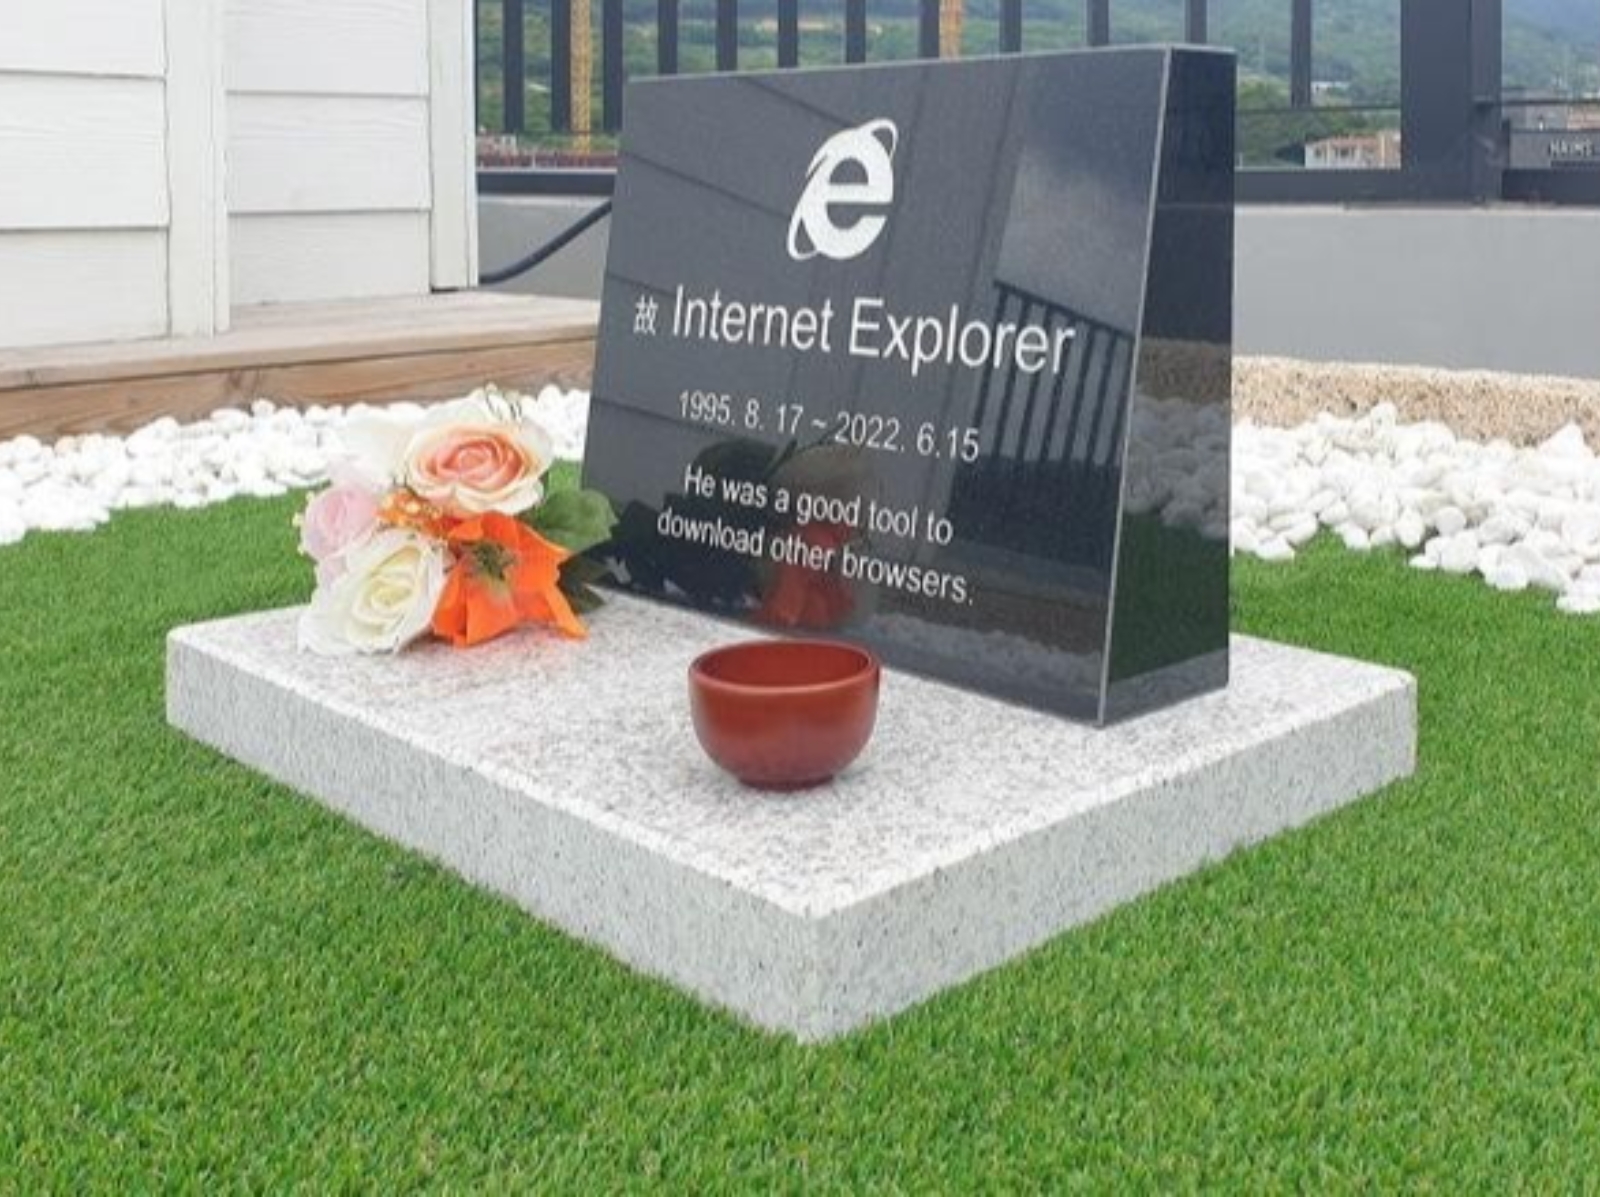 微軟 IE 正式結束服務，工程師打造實體墓碑悼念並寫道「它是用來下載其他瀏覽器的好工具」